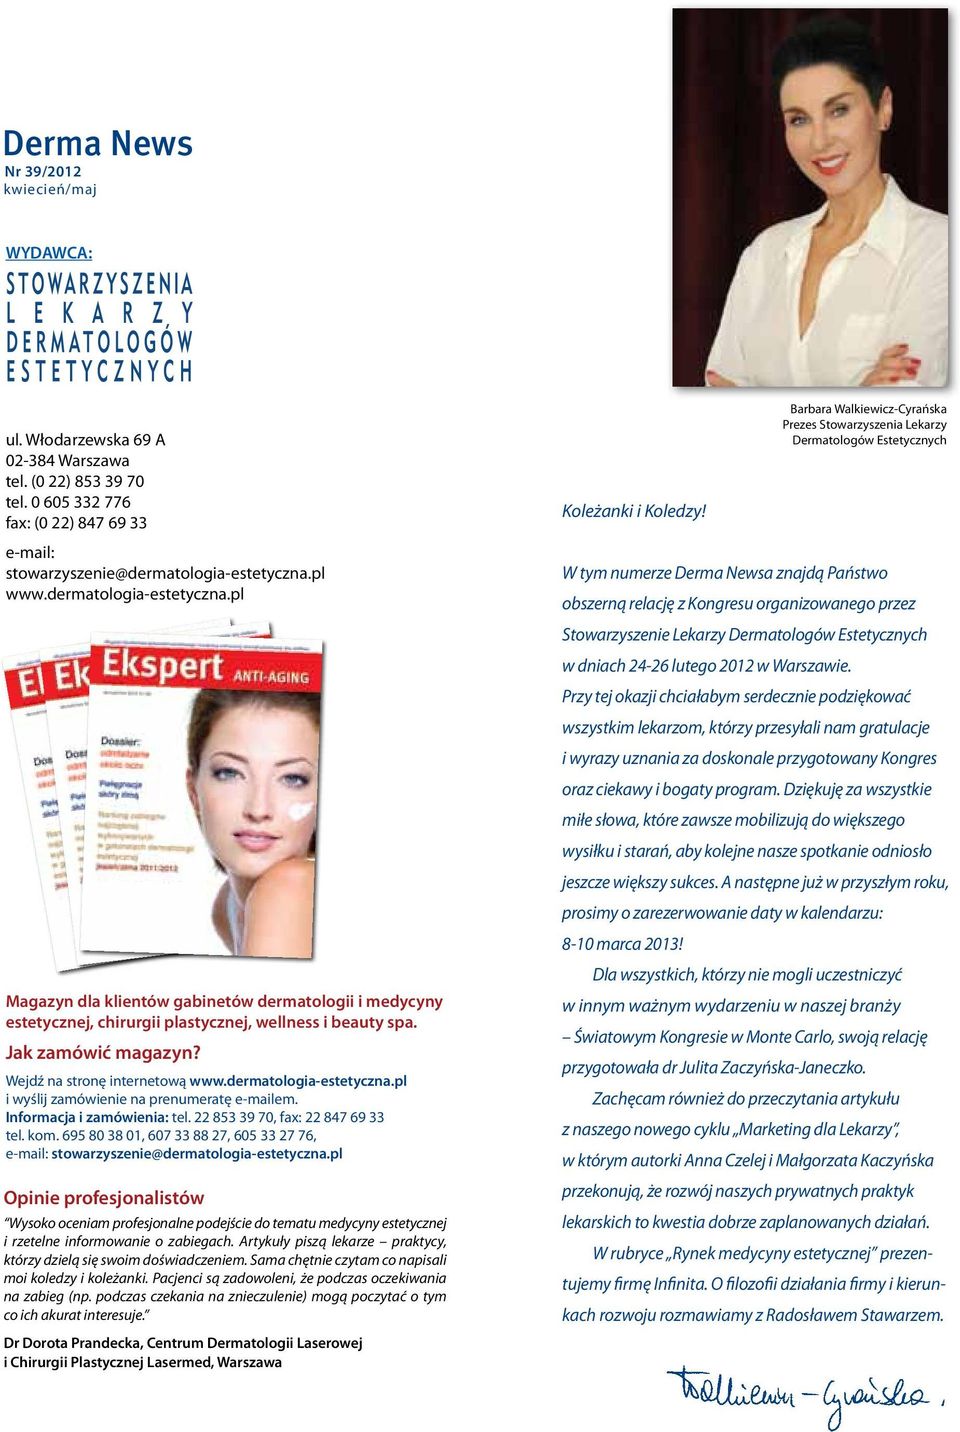 Jak zamówić magazyn? Wejdź na stronę internetową www.dermatologia-estetyczna.pl i wyślij zamówienie na prenumeratę e-mailem. Informacja i zamówienia: tel. 22 853 39 70, fax: 22 847 69 33 tel. kom.